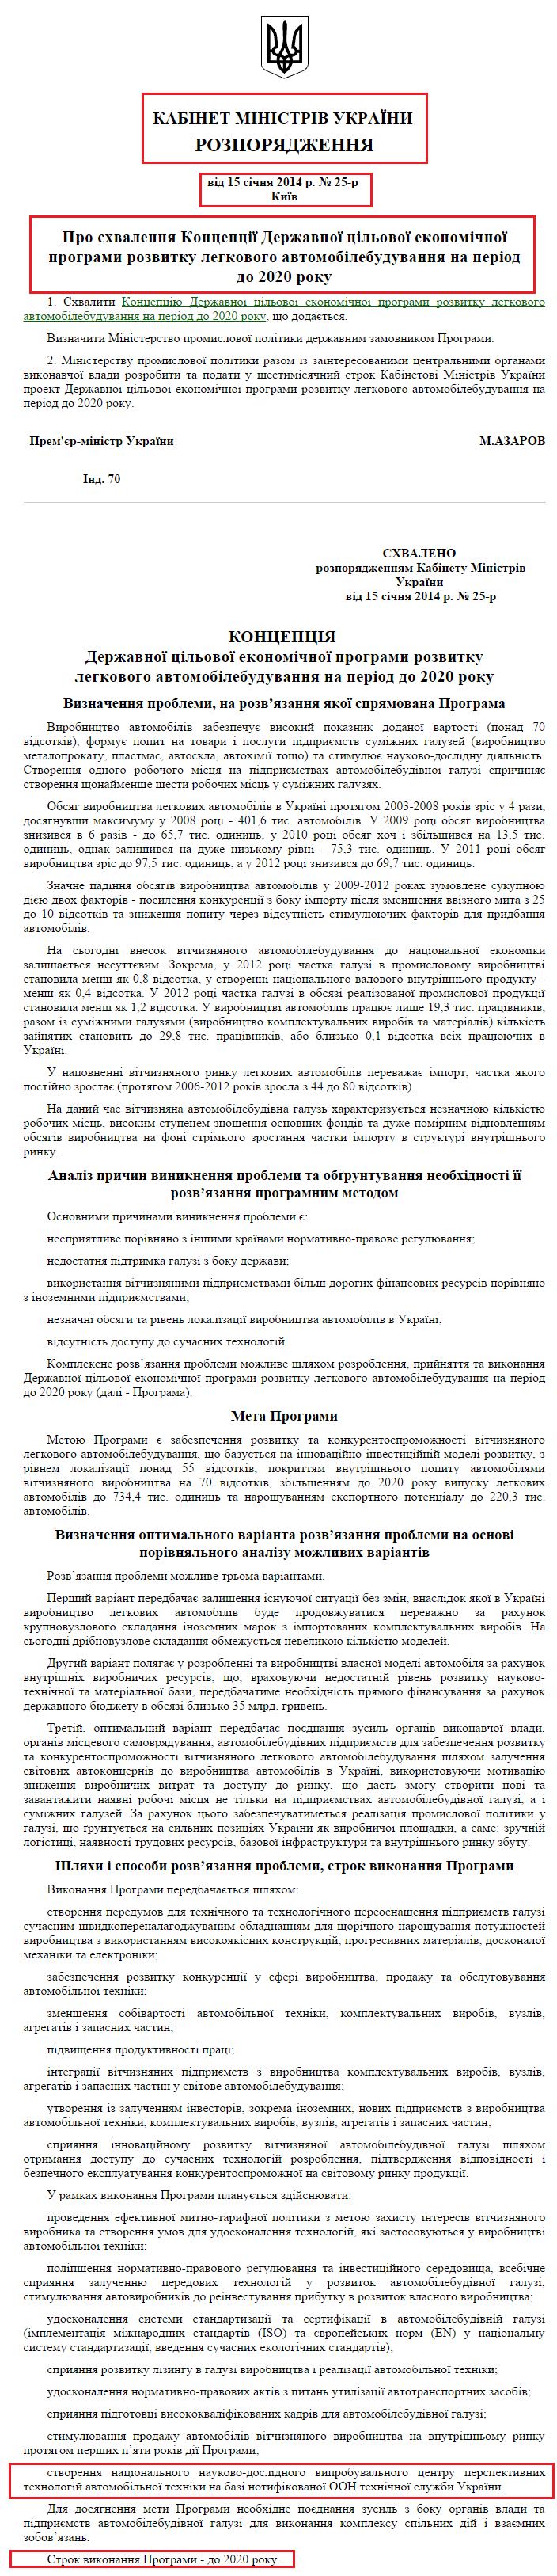 http://zakon4.rada.gov.ua/laws/show/25-2014-%D1%80